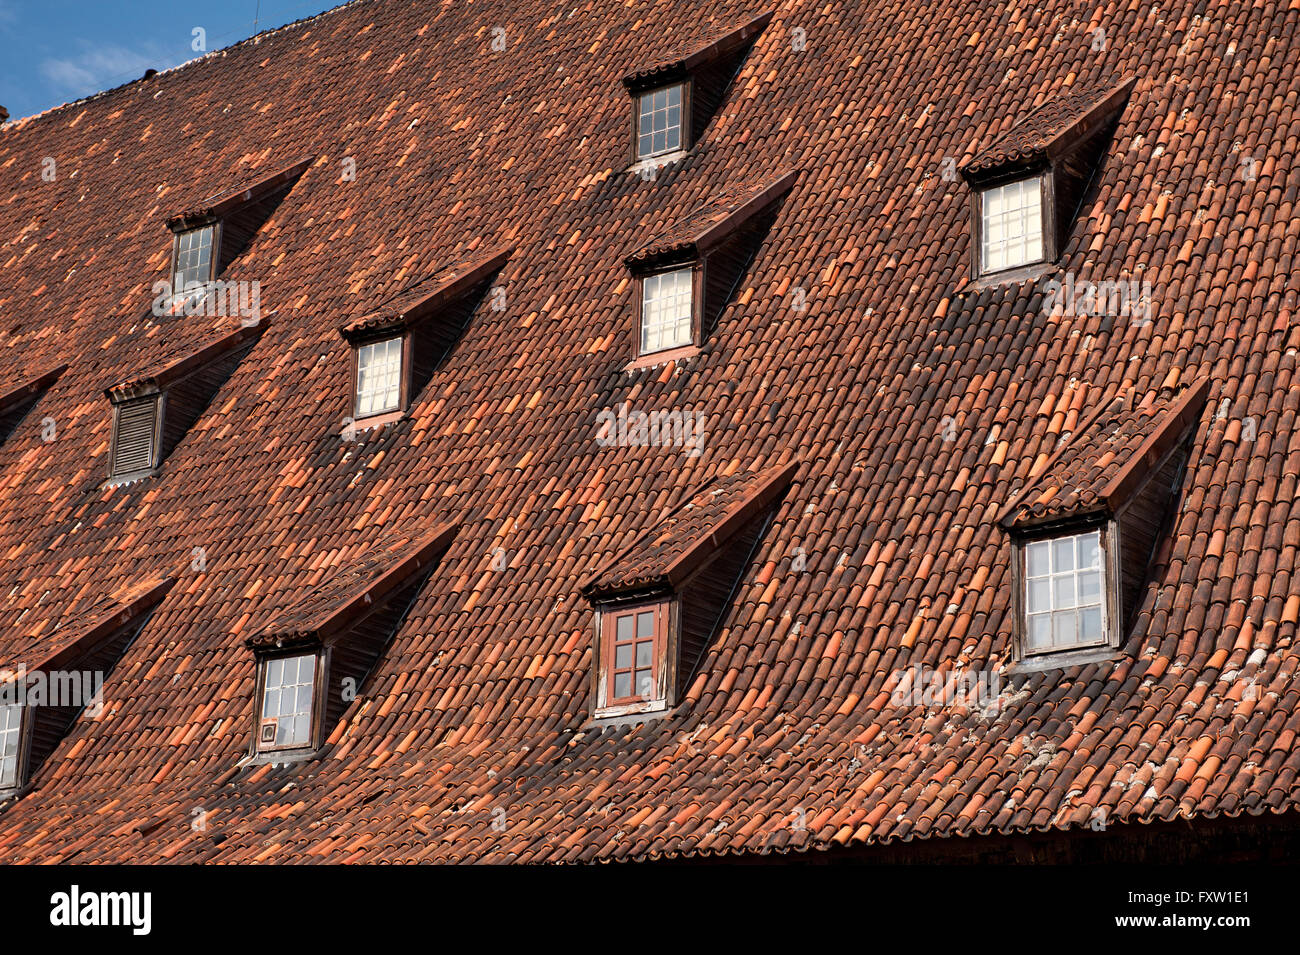 Wielki Mlyn Dach in Danzig, die große Mühle mit steigenden Ziegeldach und Fenster, Gebäudehülle im Old Town, Danzig, Polen. Stockfoto